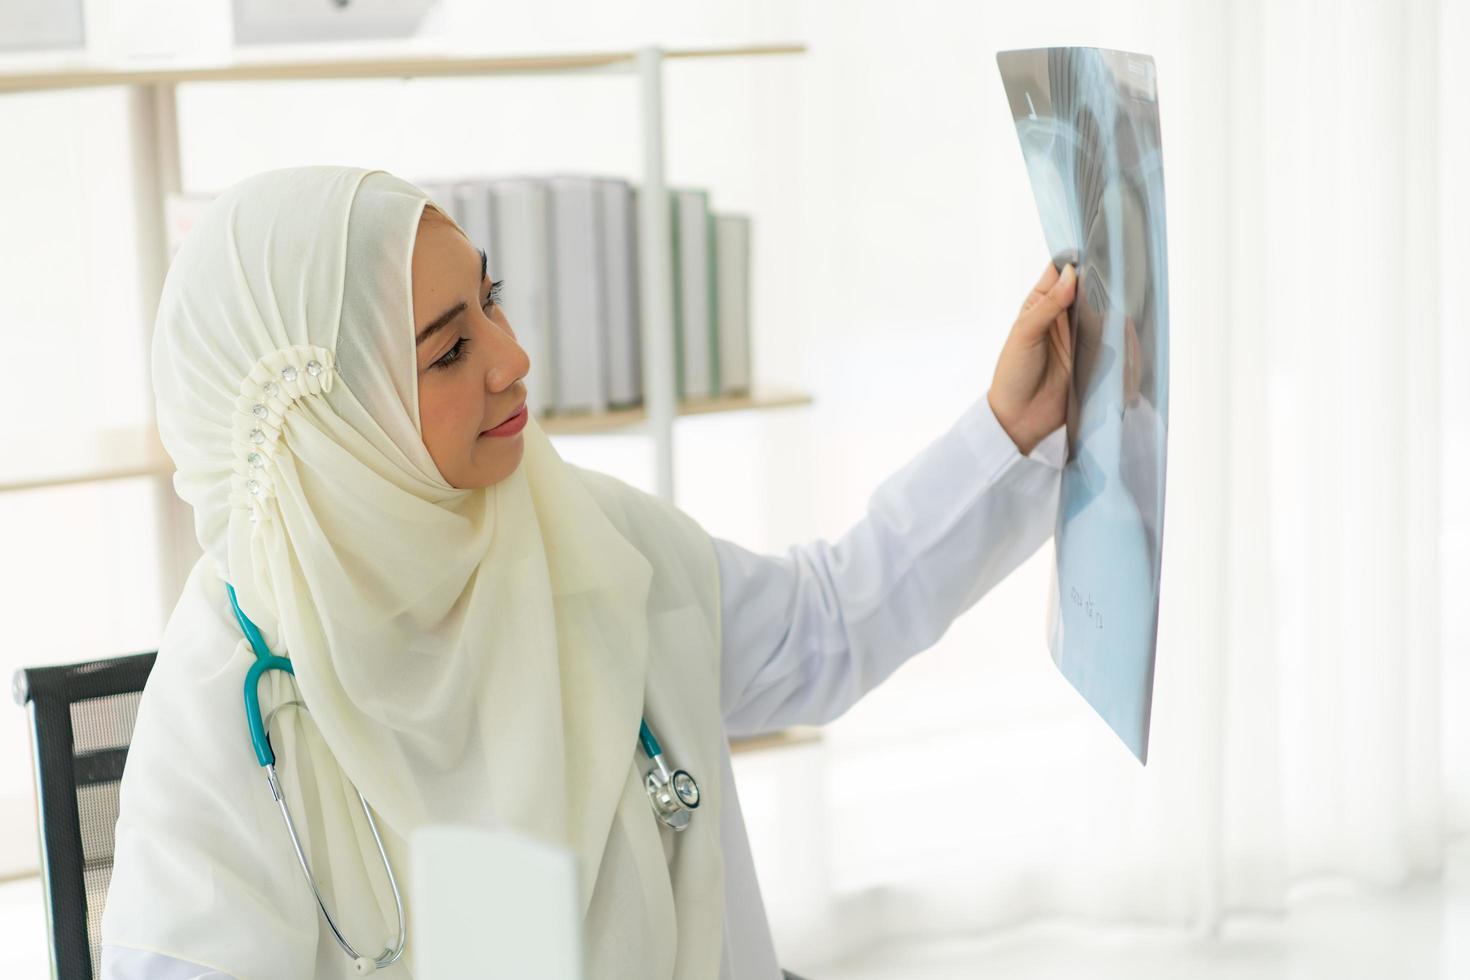 médicos muçulmanos estavam sorrindo e felizes em fornecer serviços médicos foto